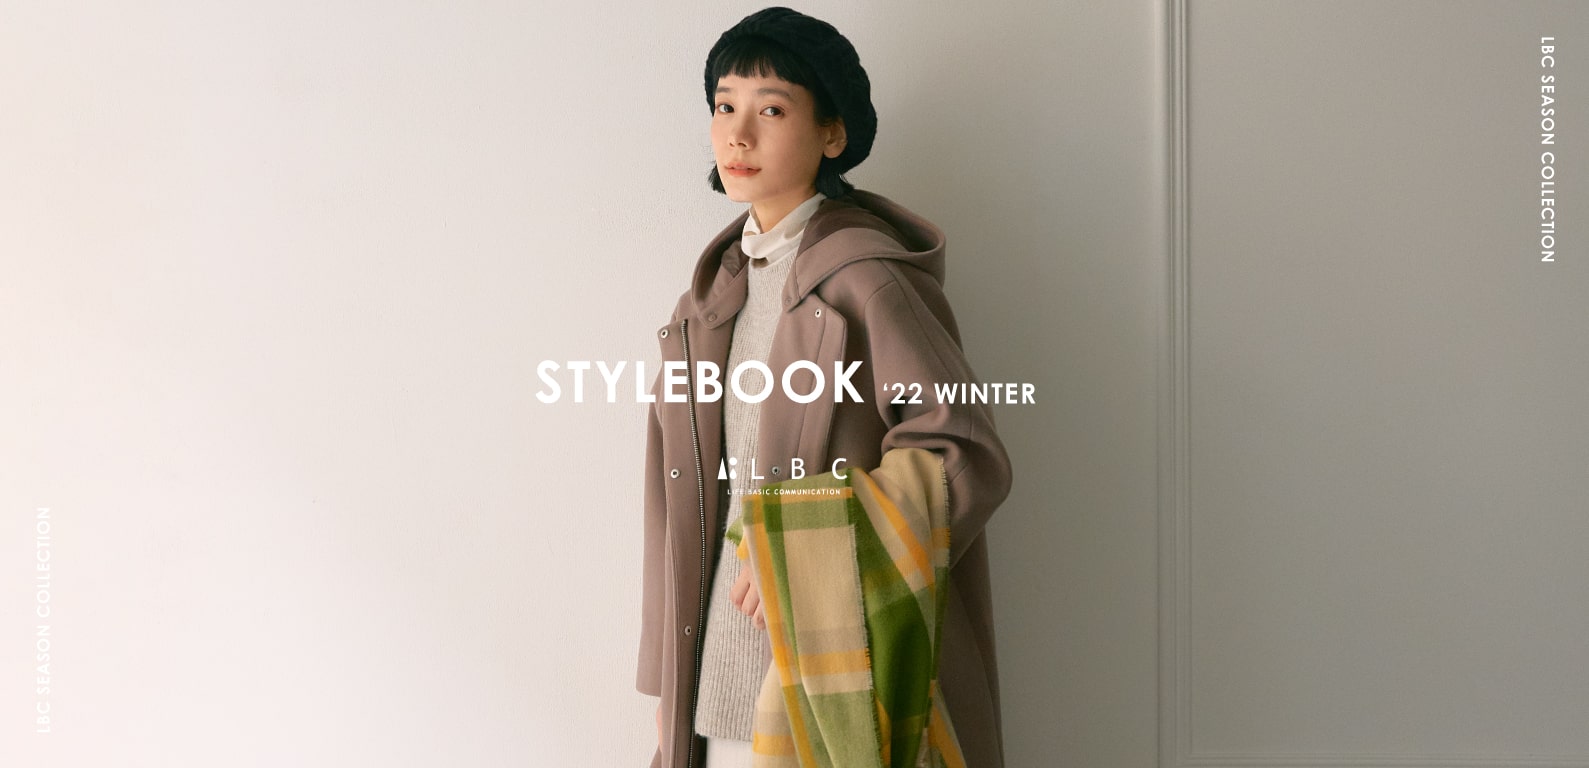 LBC stylebook winter